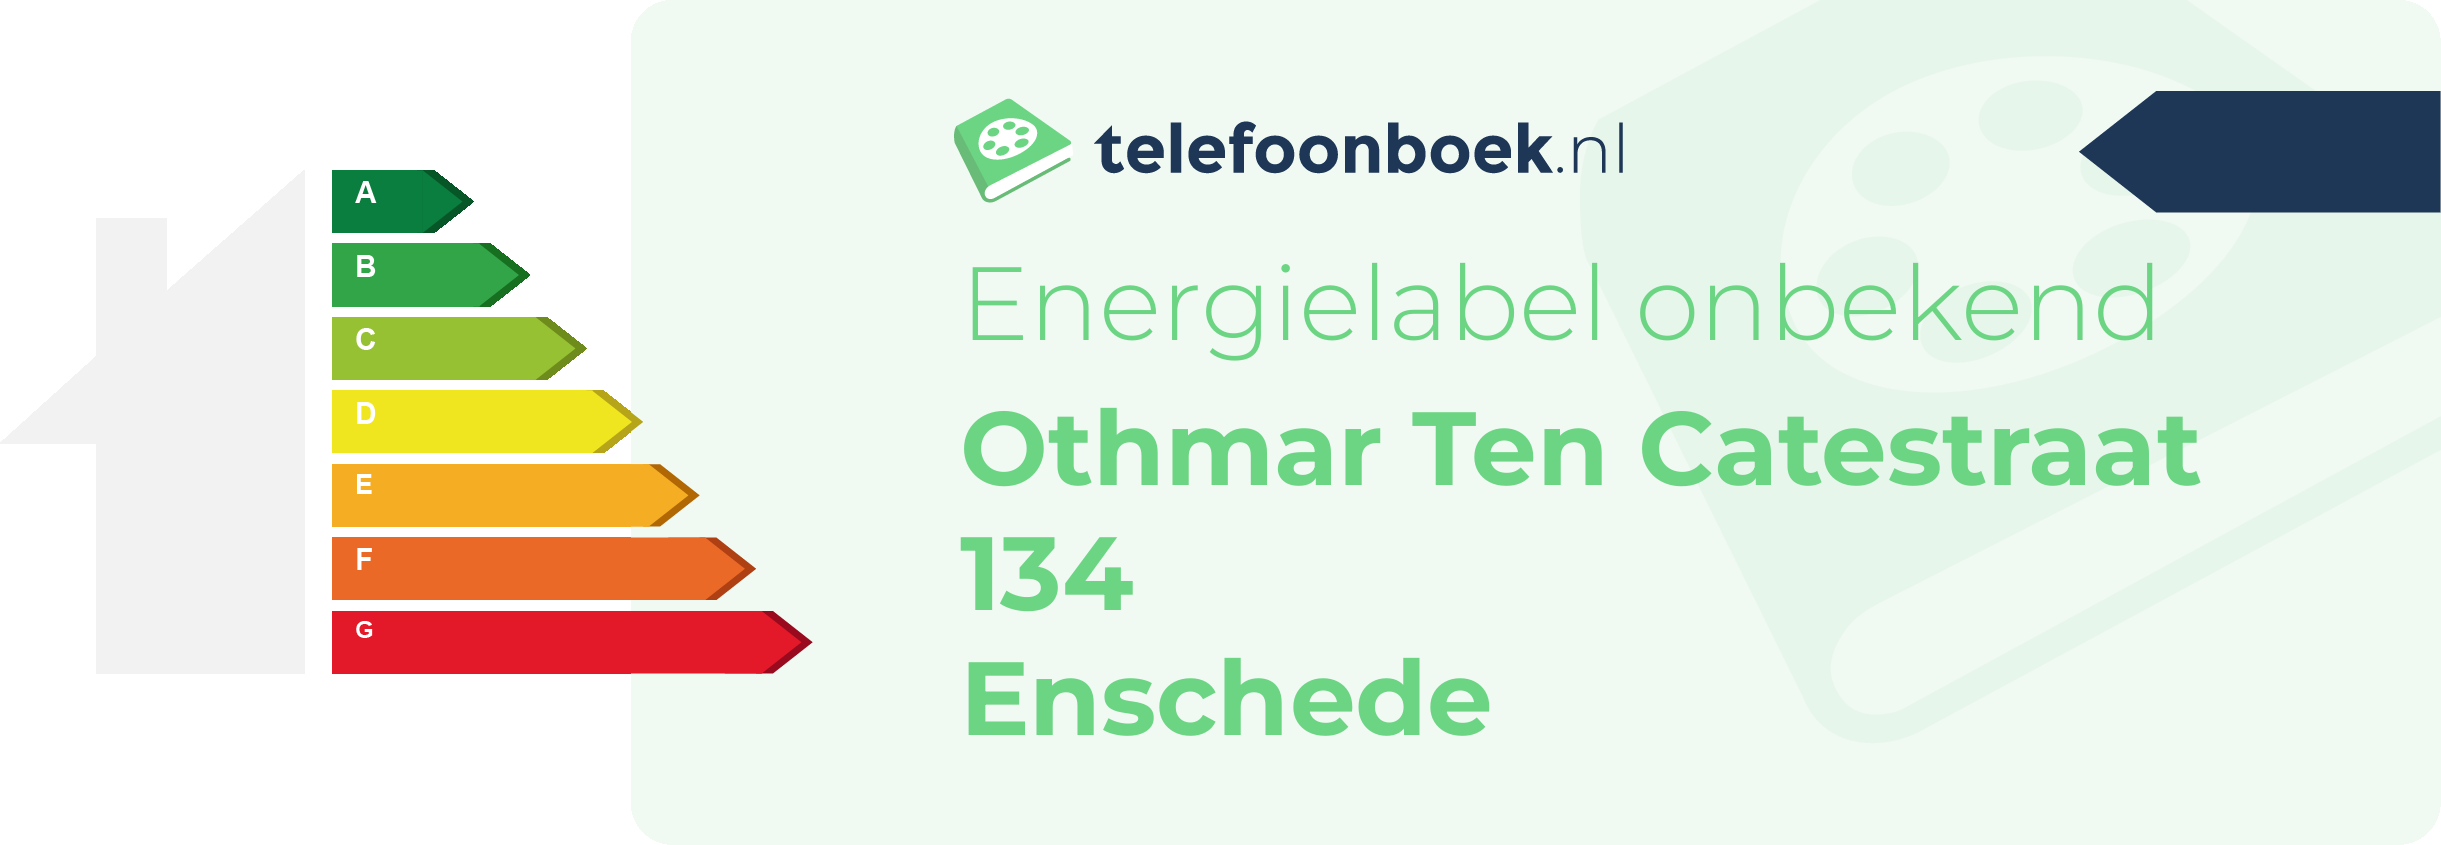 Energielabel Othmar Ten Catestraat 134 Enschede